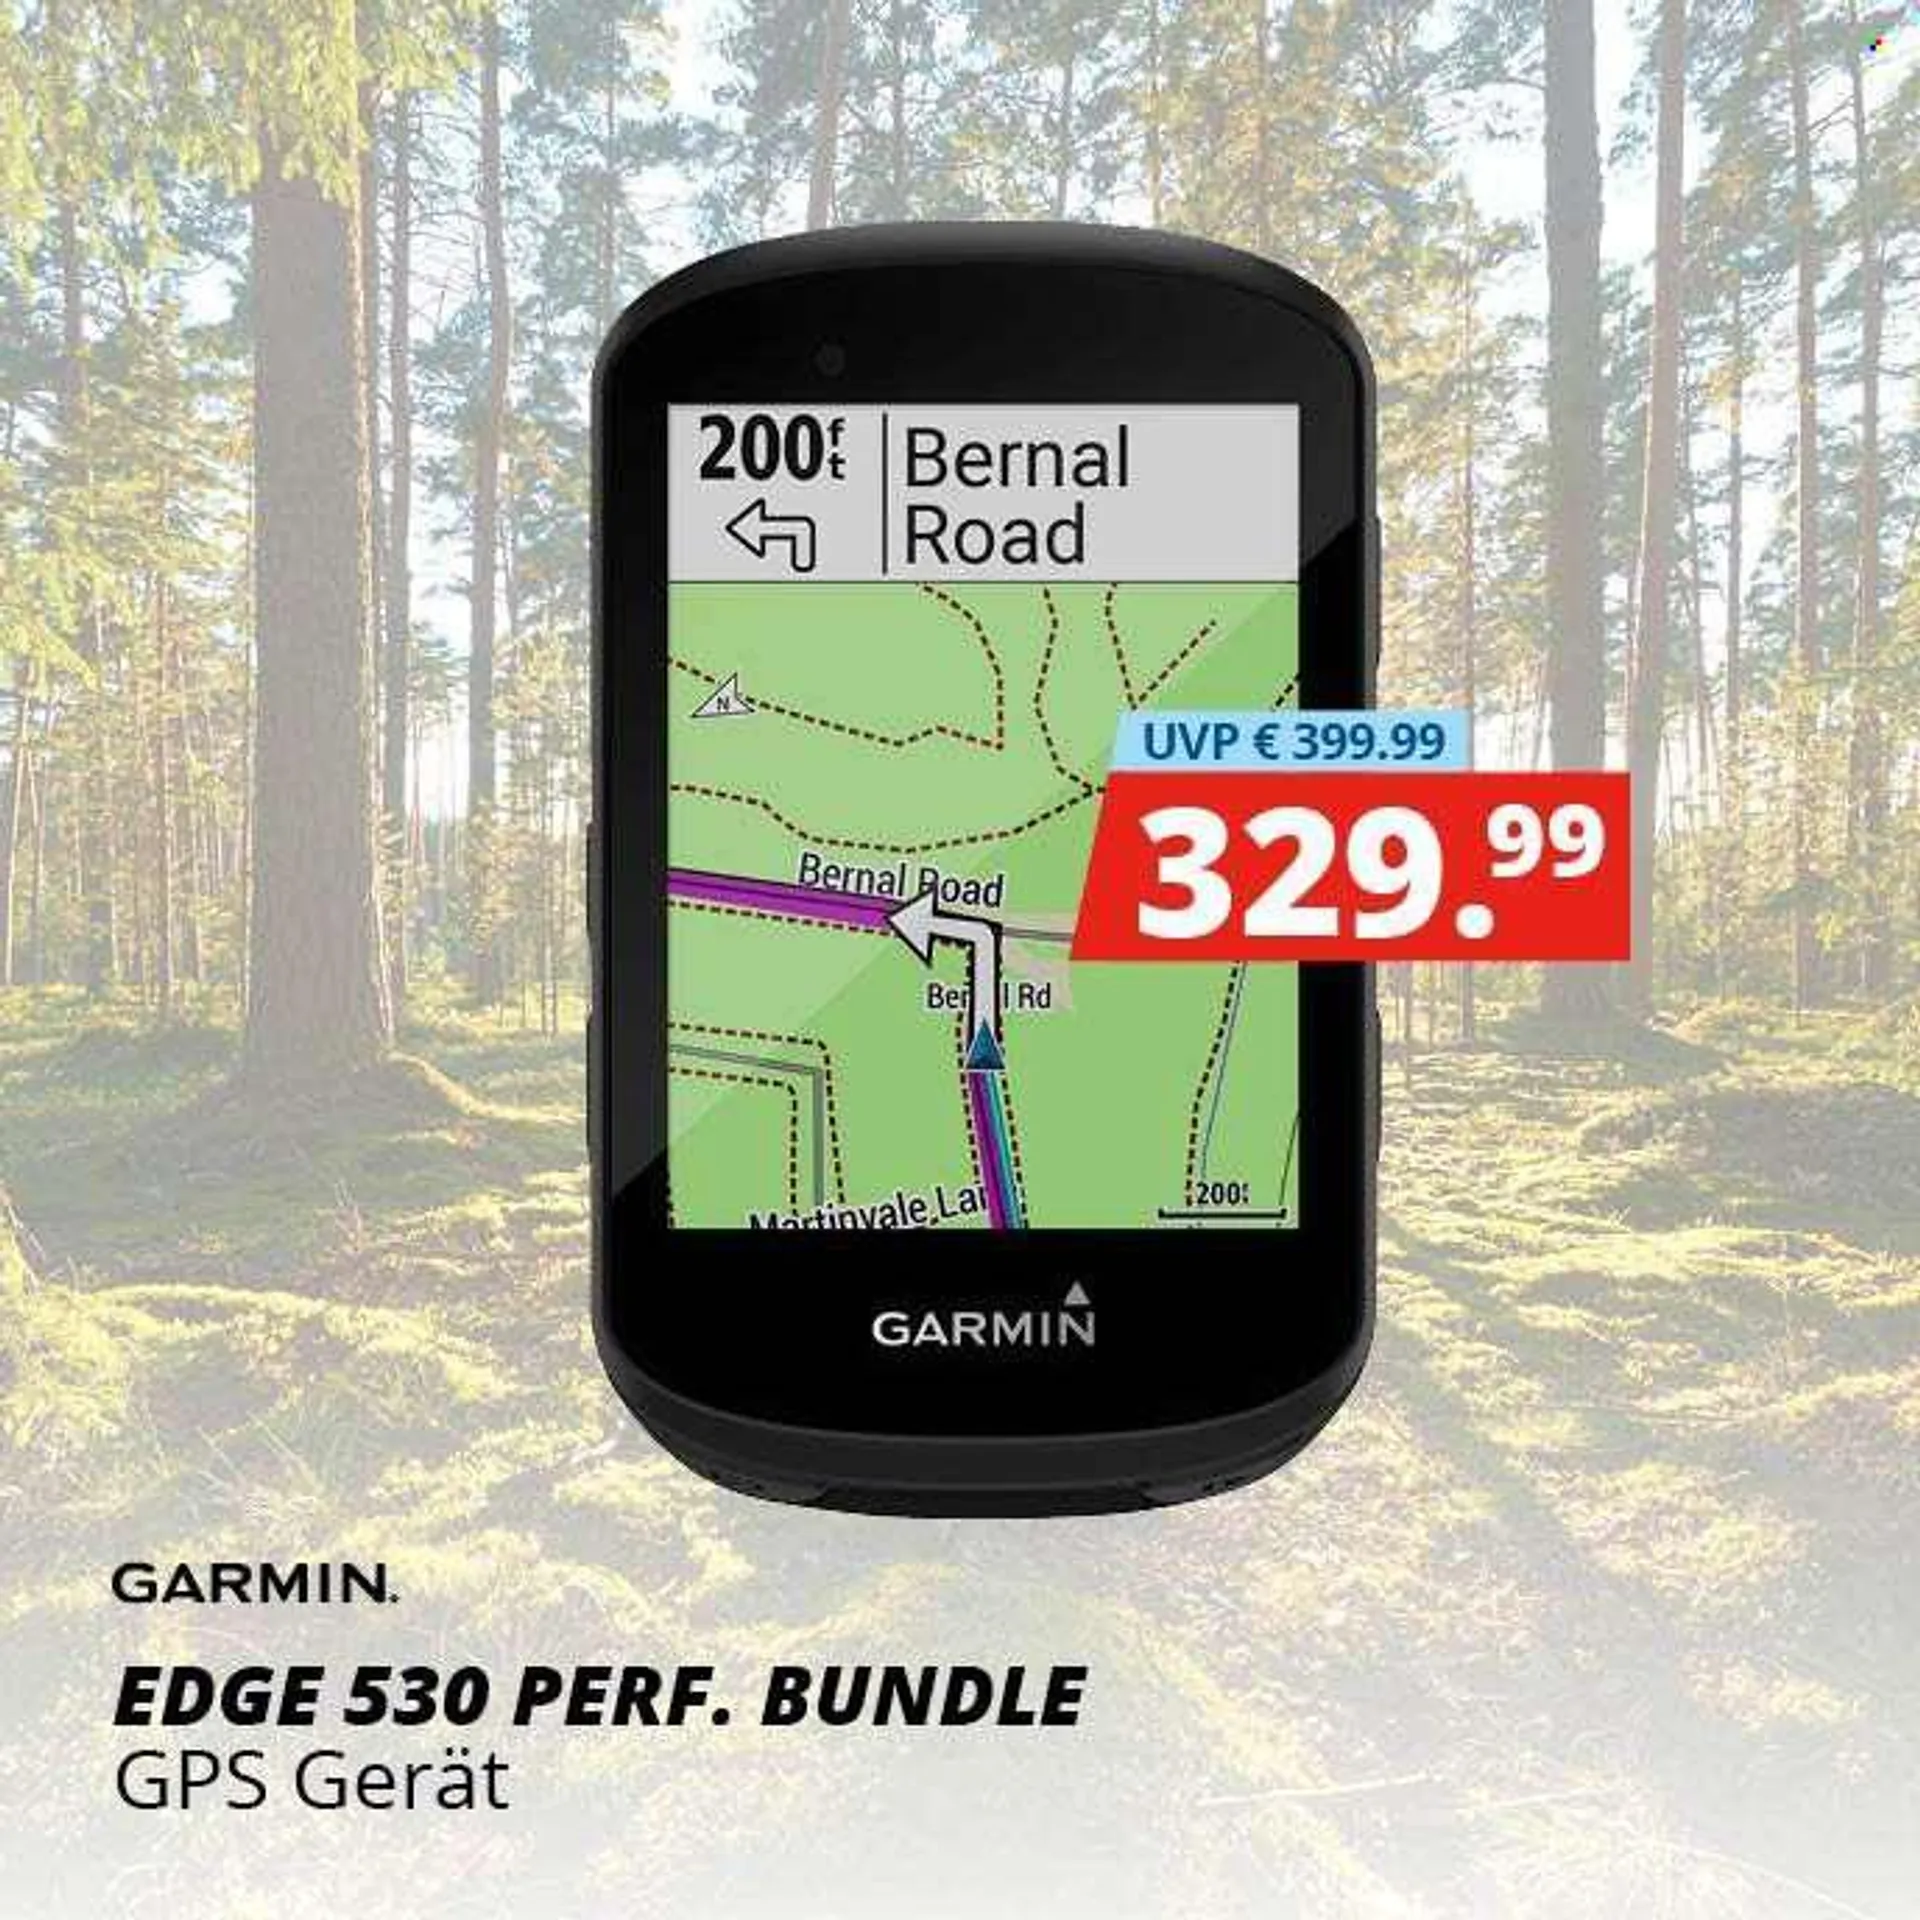 Angebote Hervis - Verkaufsprodukte - Garmin, GPS. Seite 1.